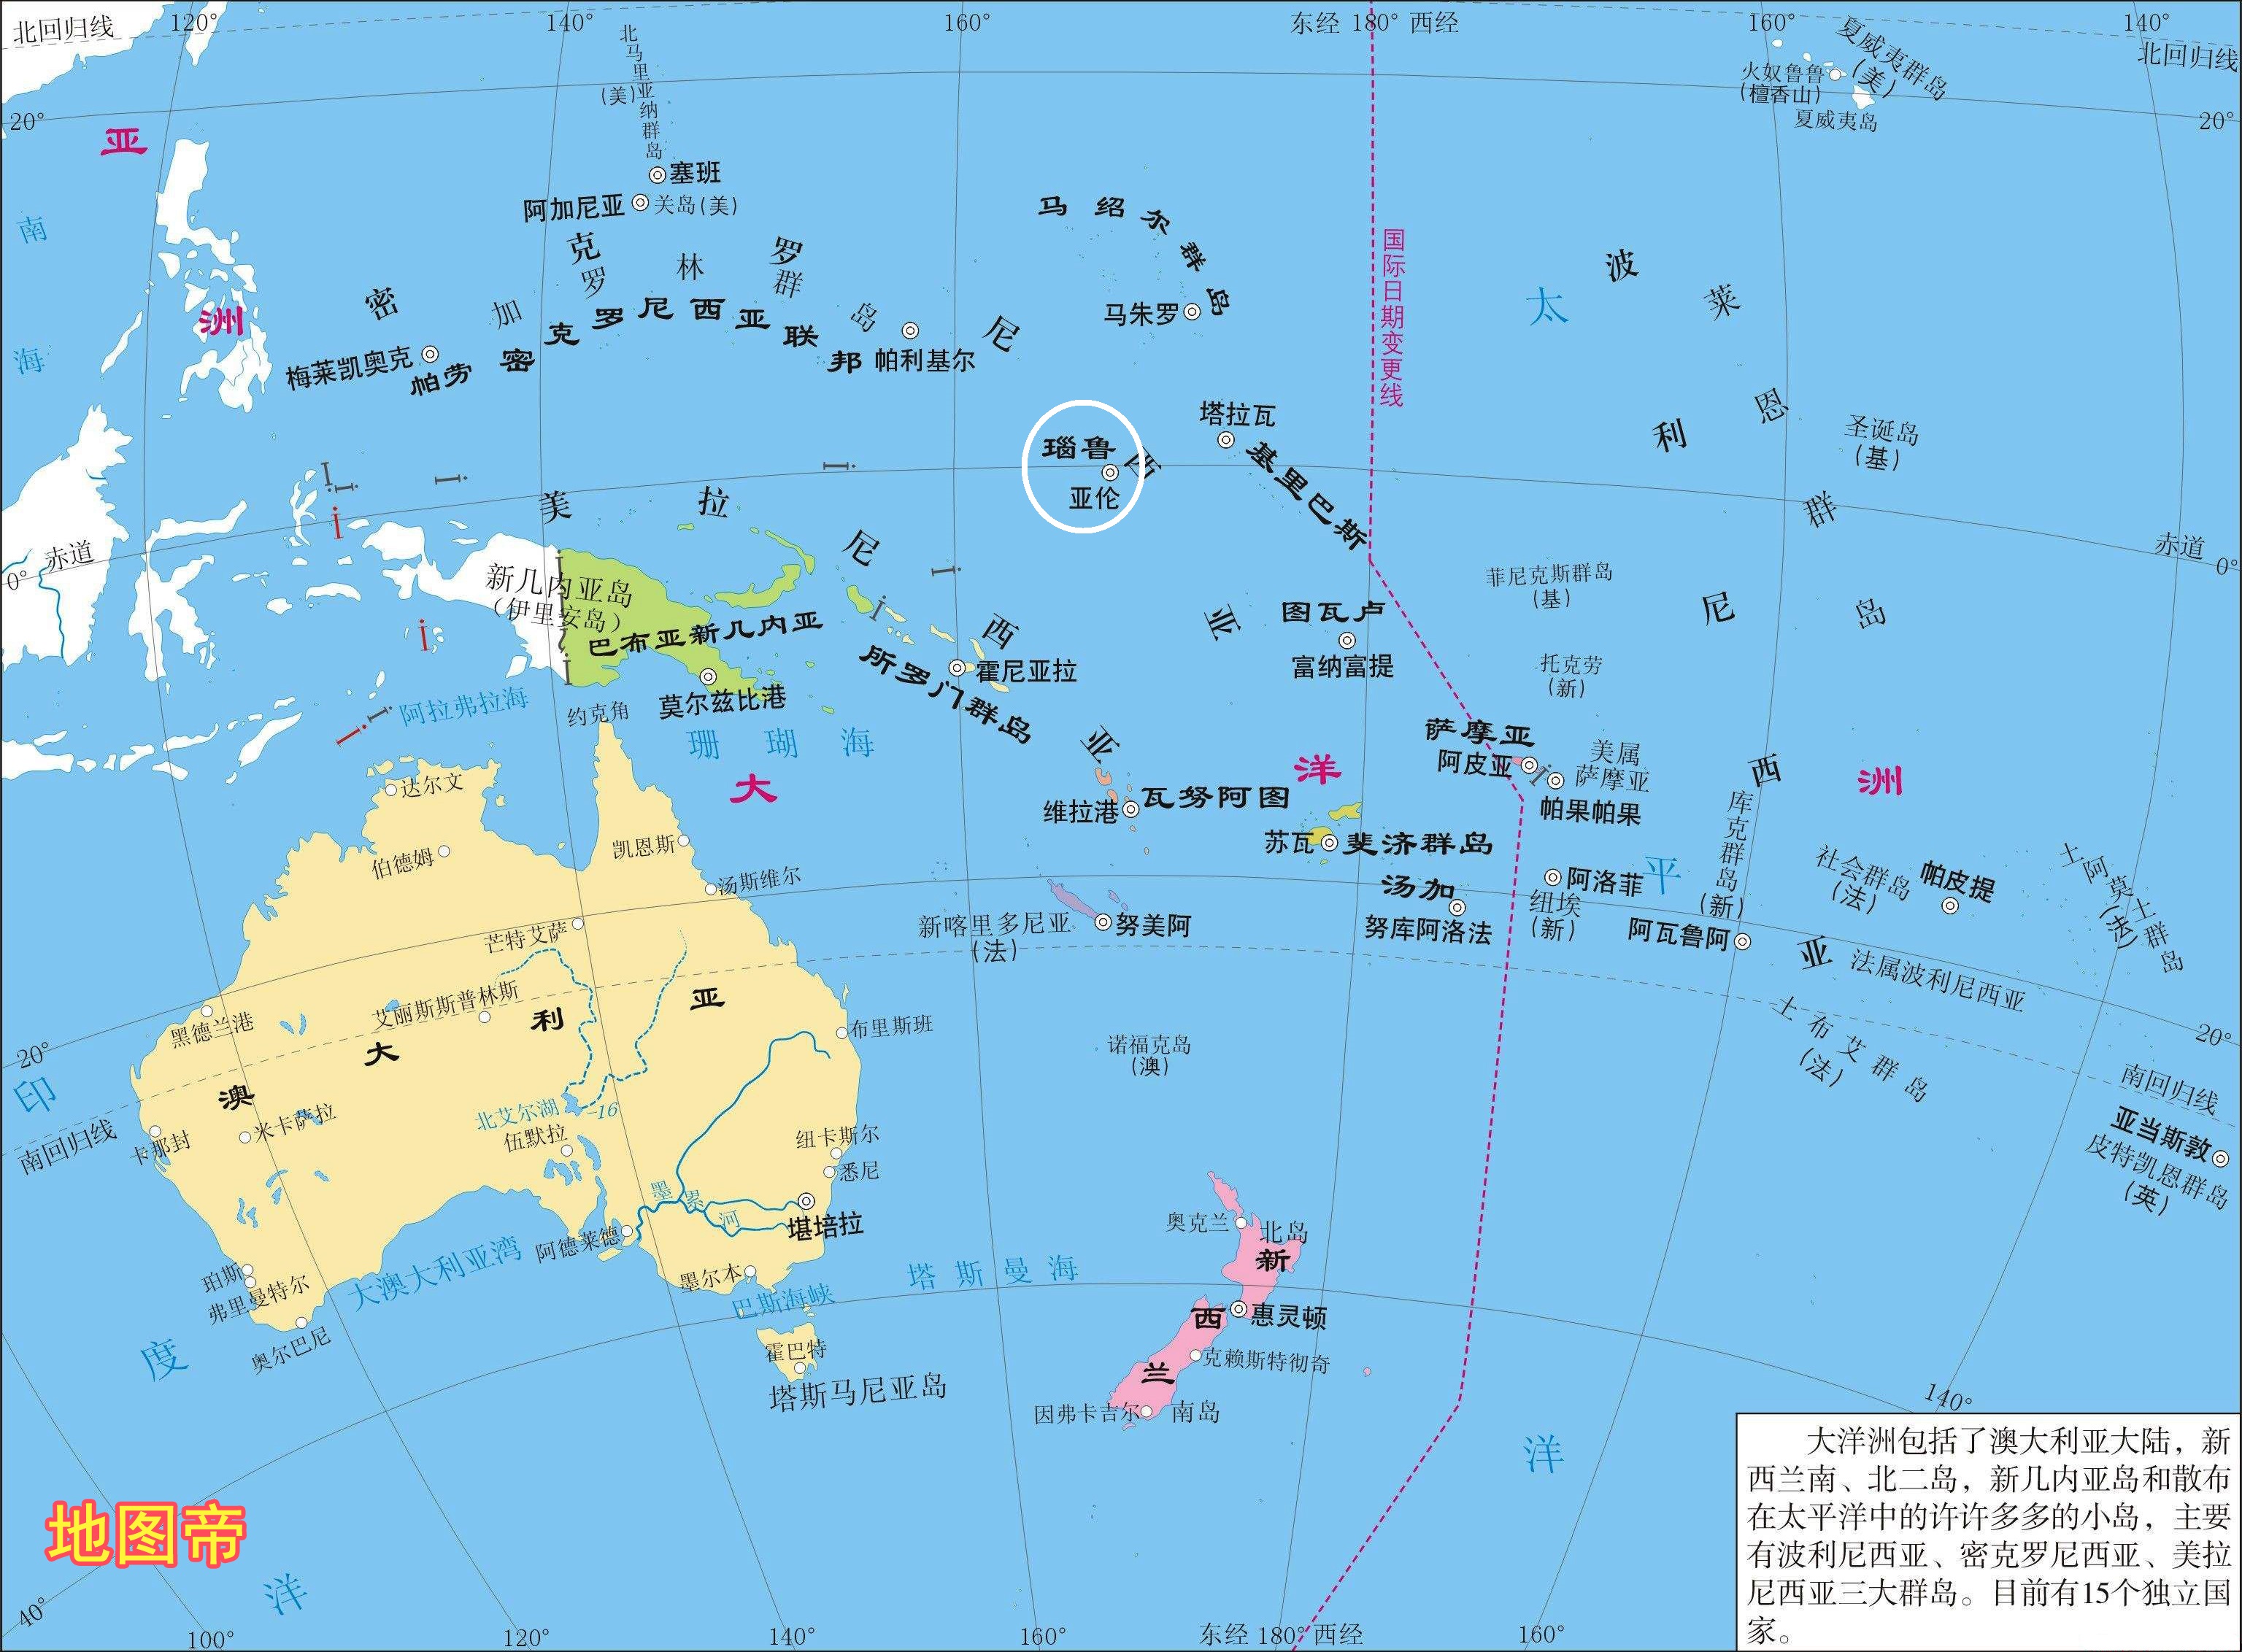 如果海平面上升,21平方公里的岛国瑙鲁怎么办?澳大利亚有想法